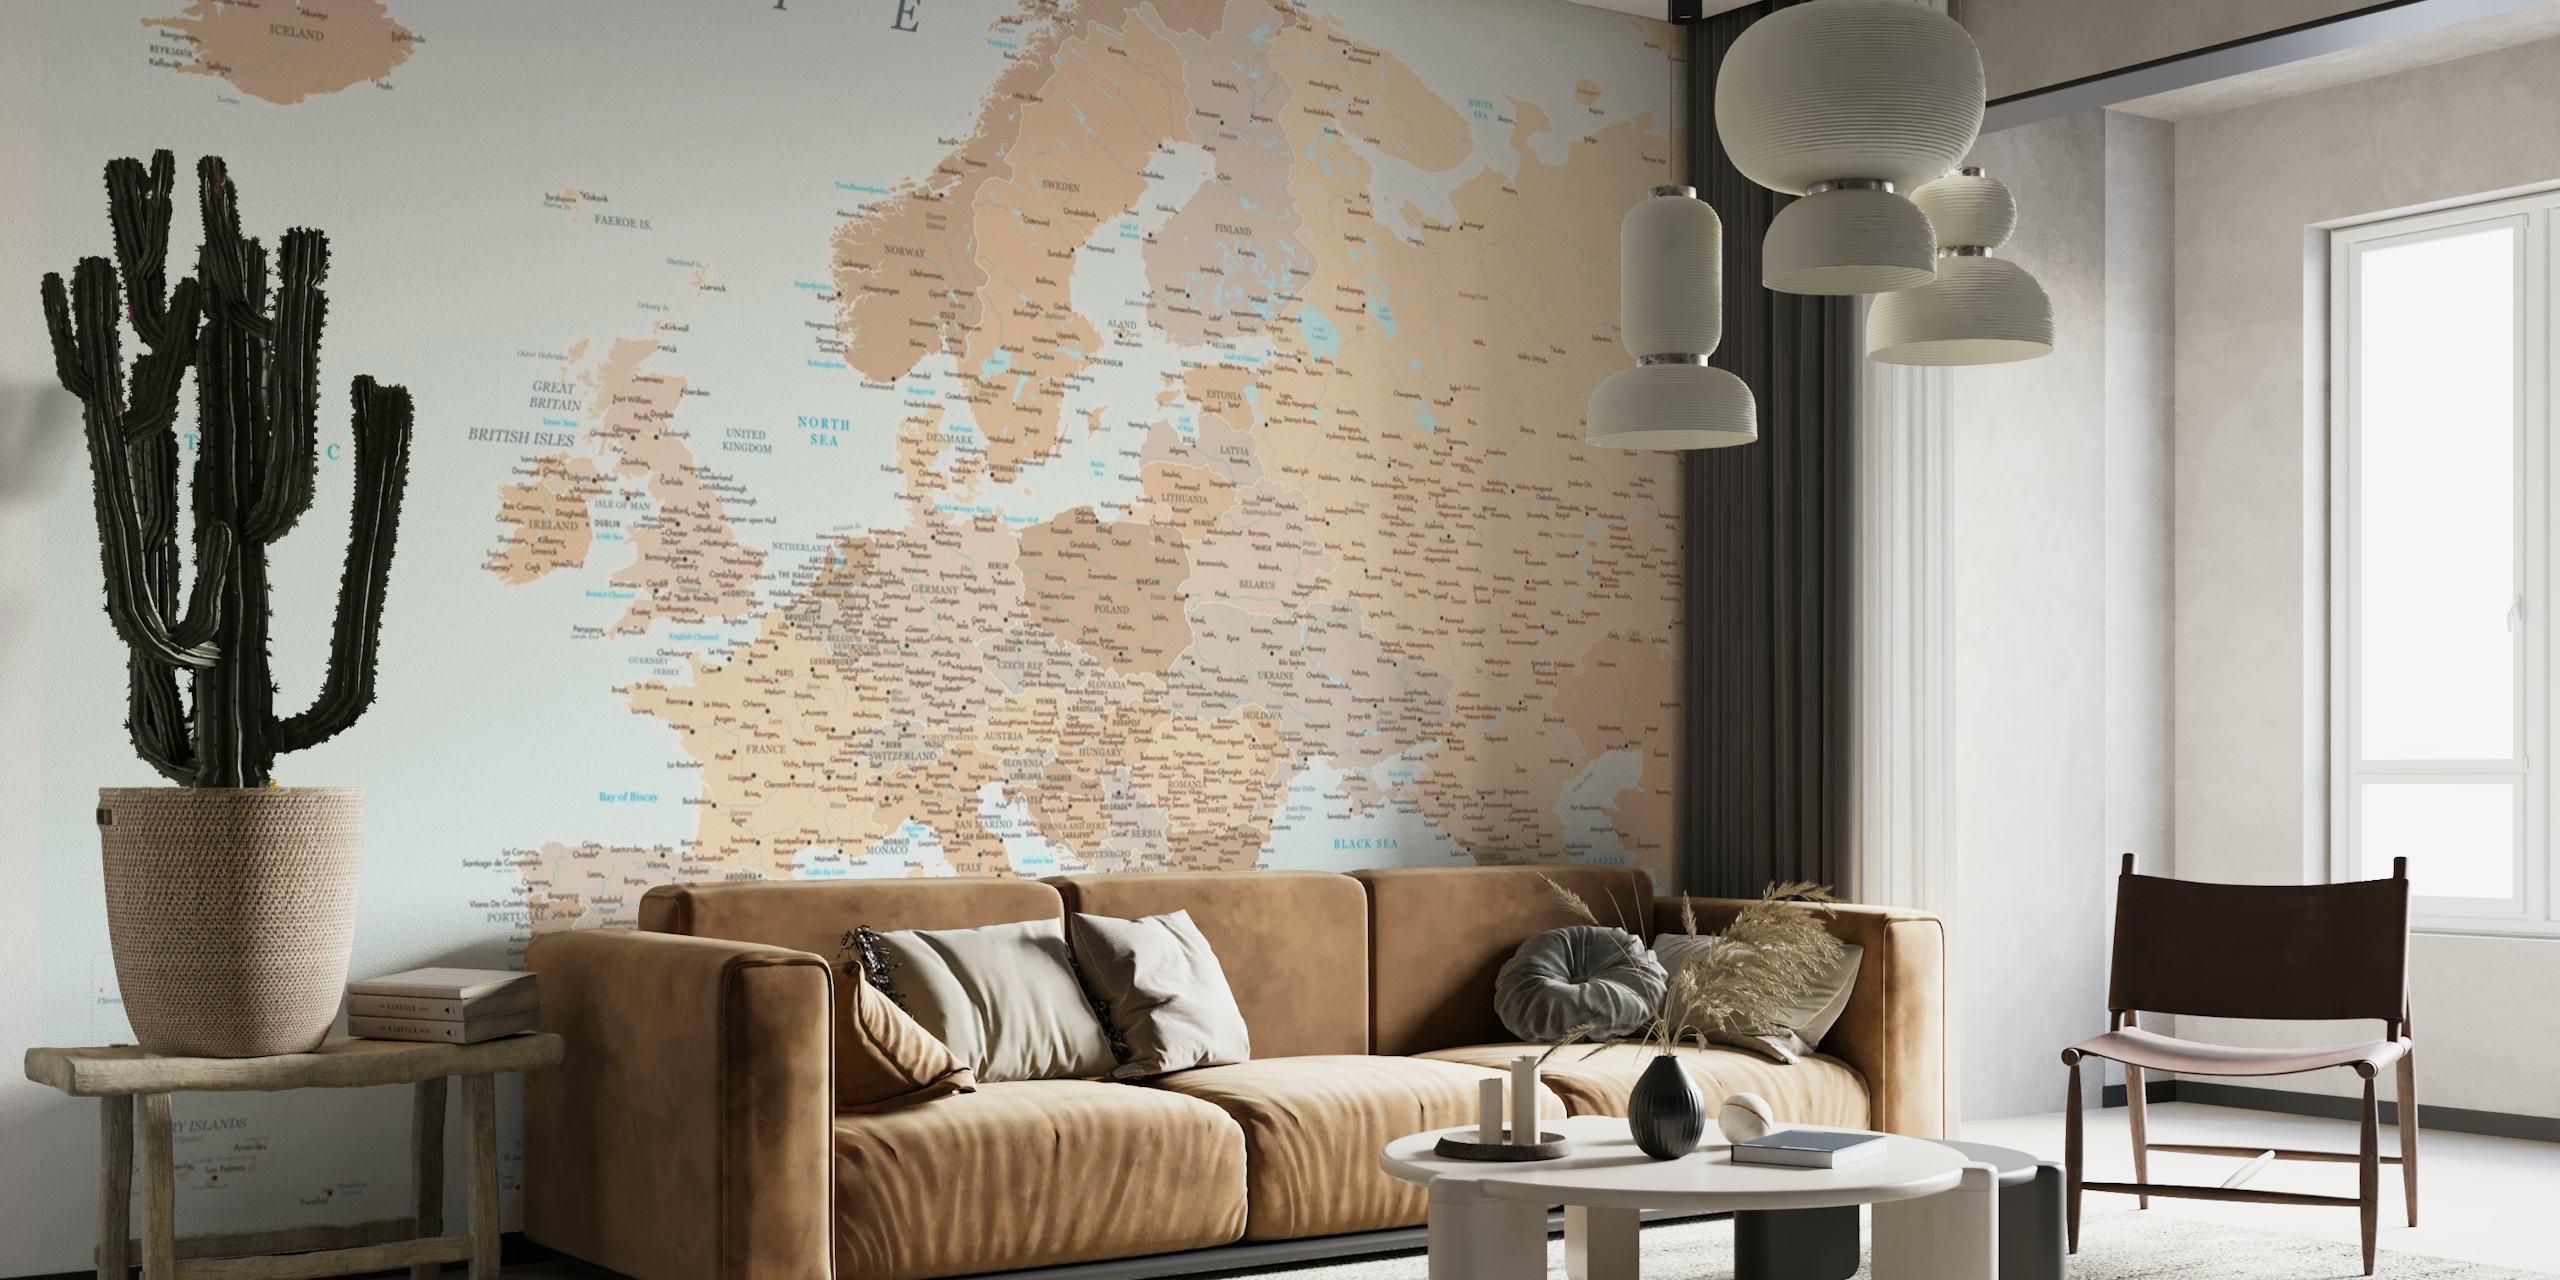 Detailed Europe map Niall tapetit